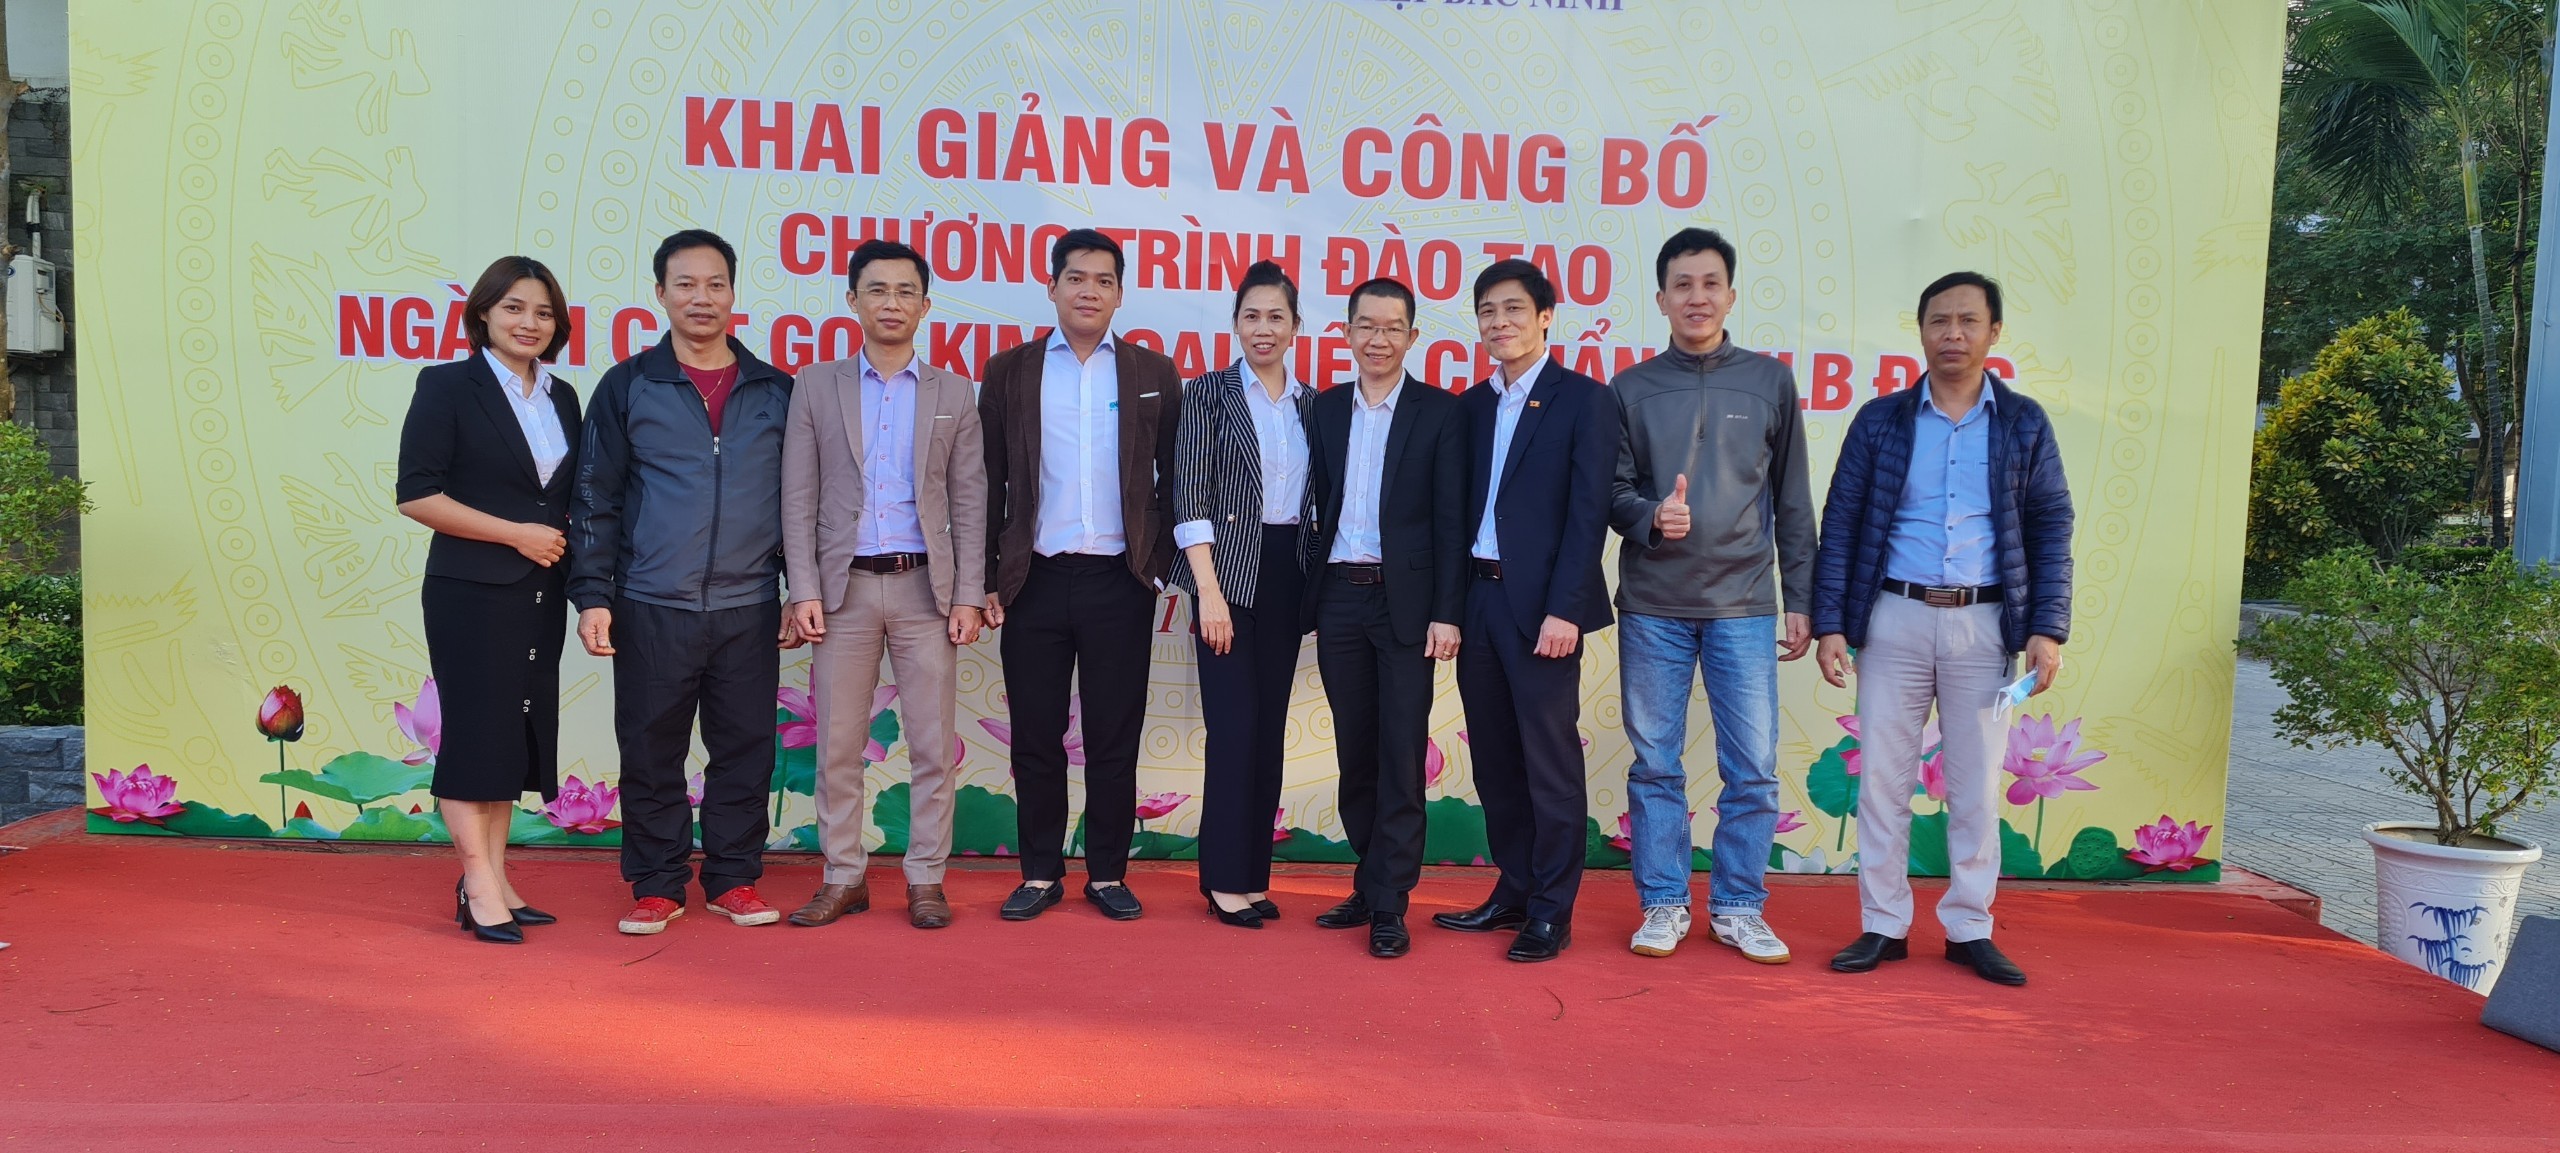 VNAS & GNG hợp tác triển khai chương trình tuyển sinh đào tạo và khảo sát lắp đặt màn hình ti vi truyền thông tại Bắc Ninh